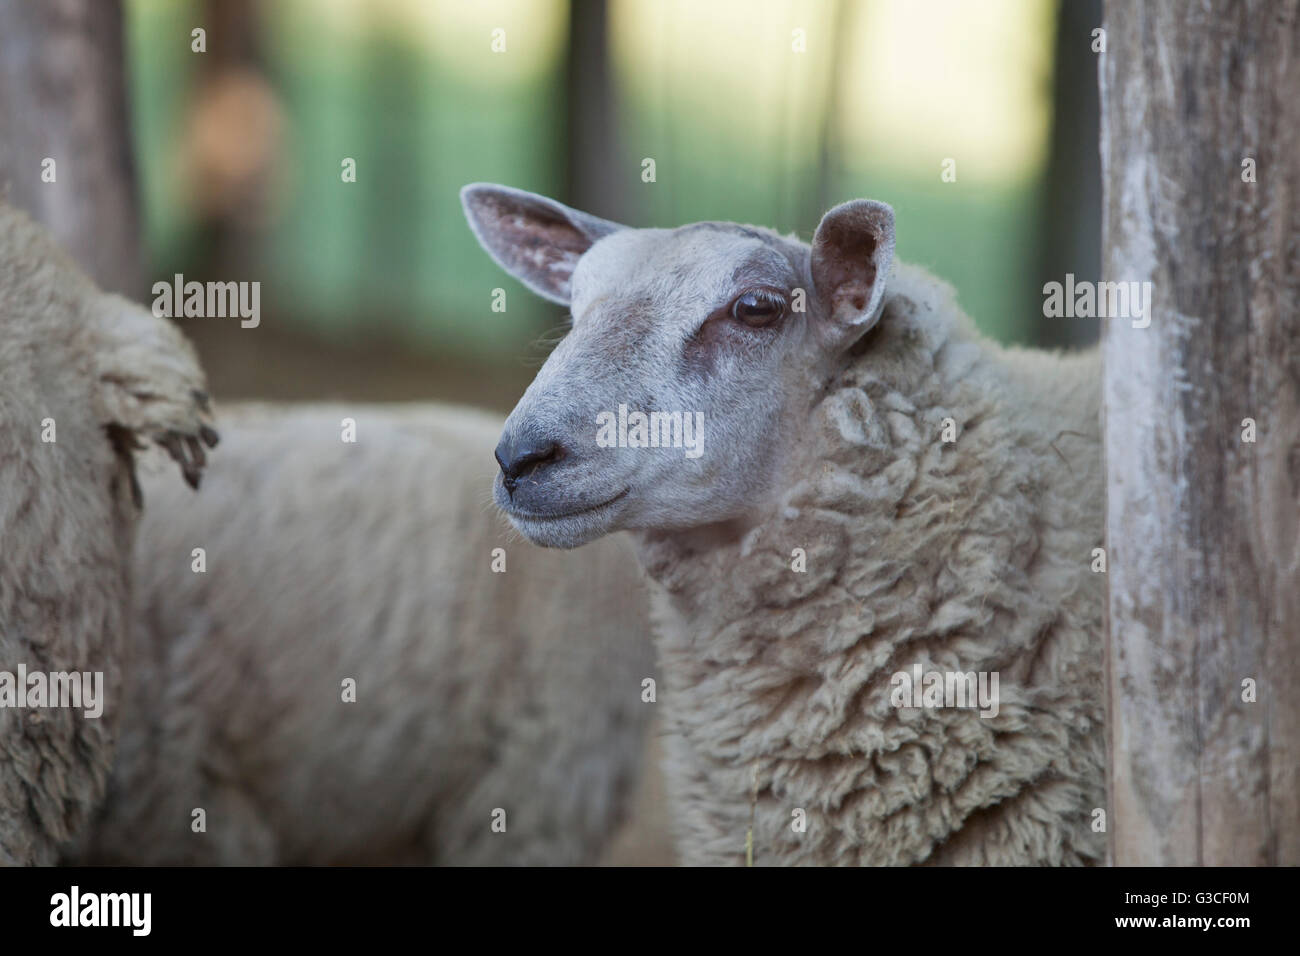 sheep farm,tonco,monferrato Stock Photo